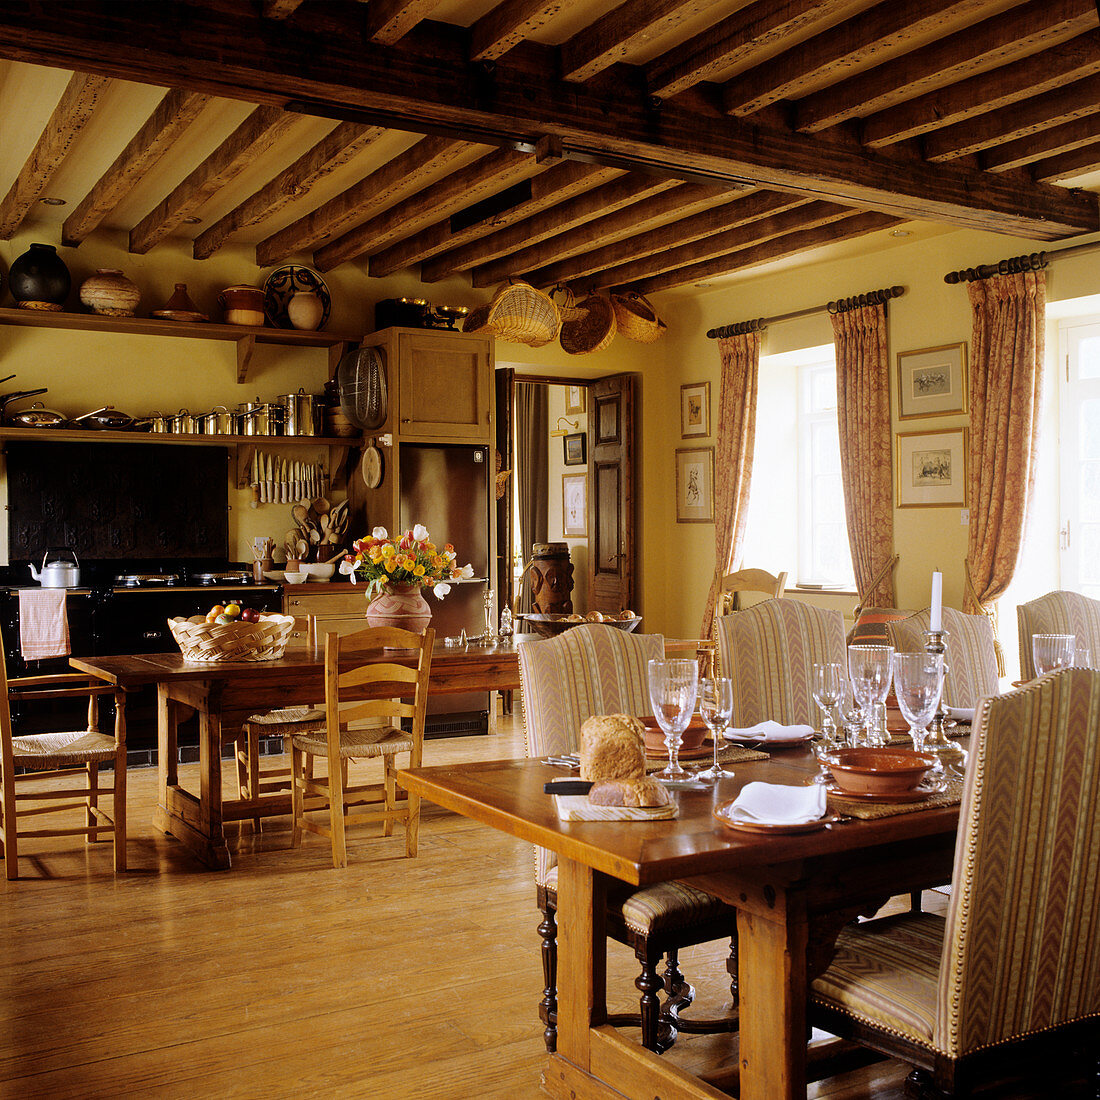 Traditionelle Esstische und offene Küche in rustikalem Gastraum mit Holzbalkendecke